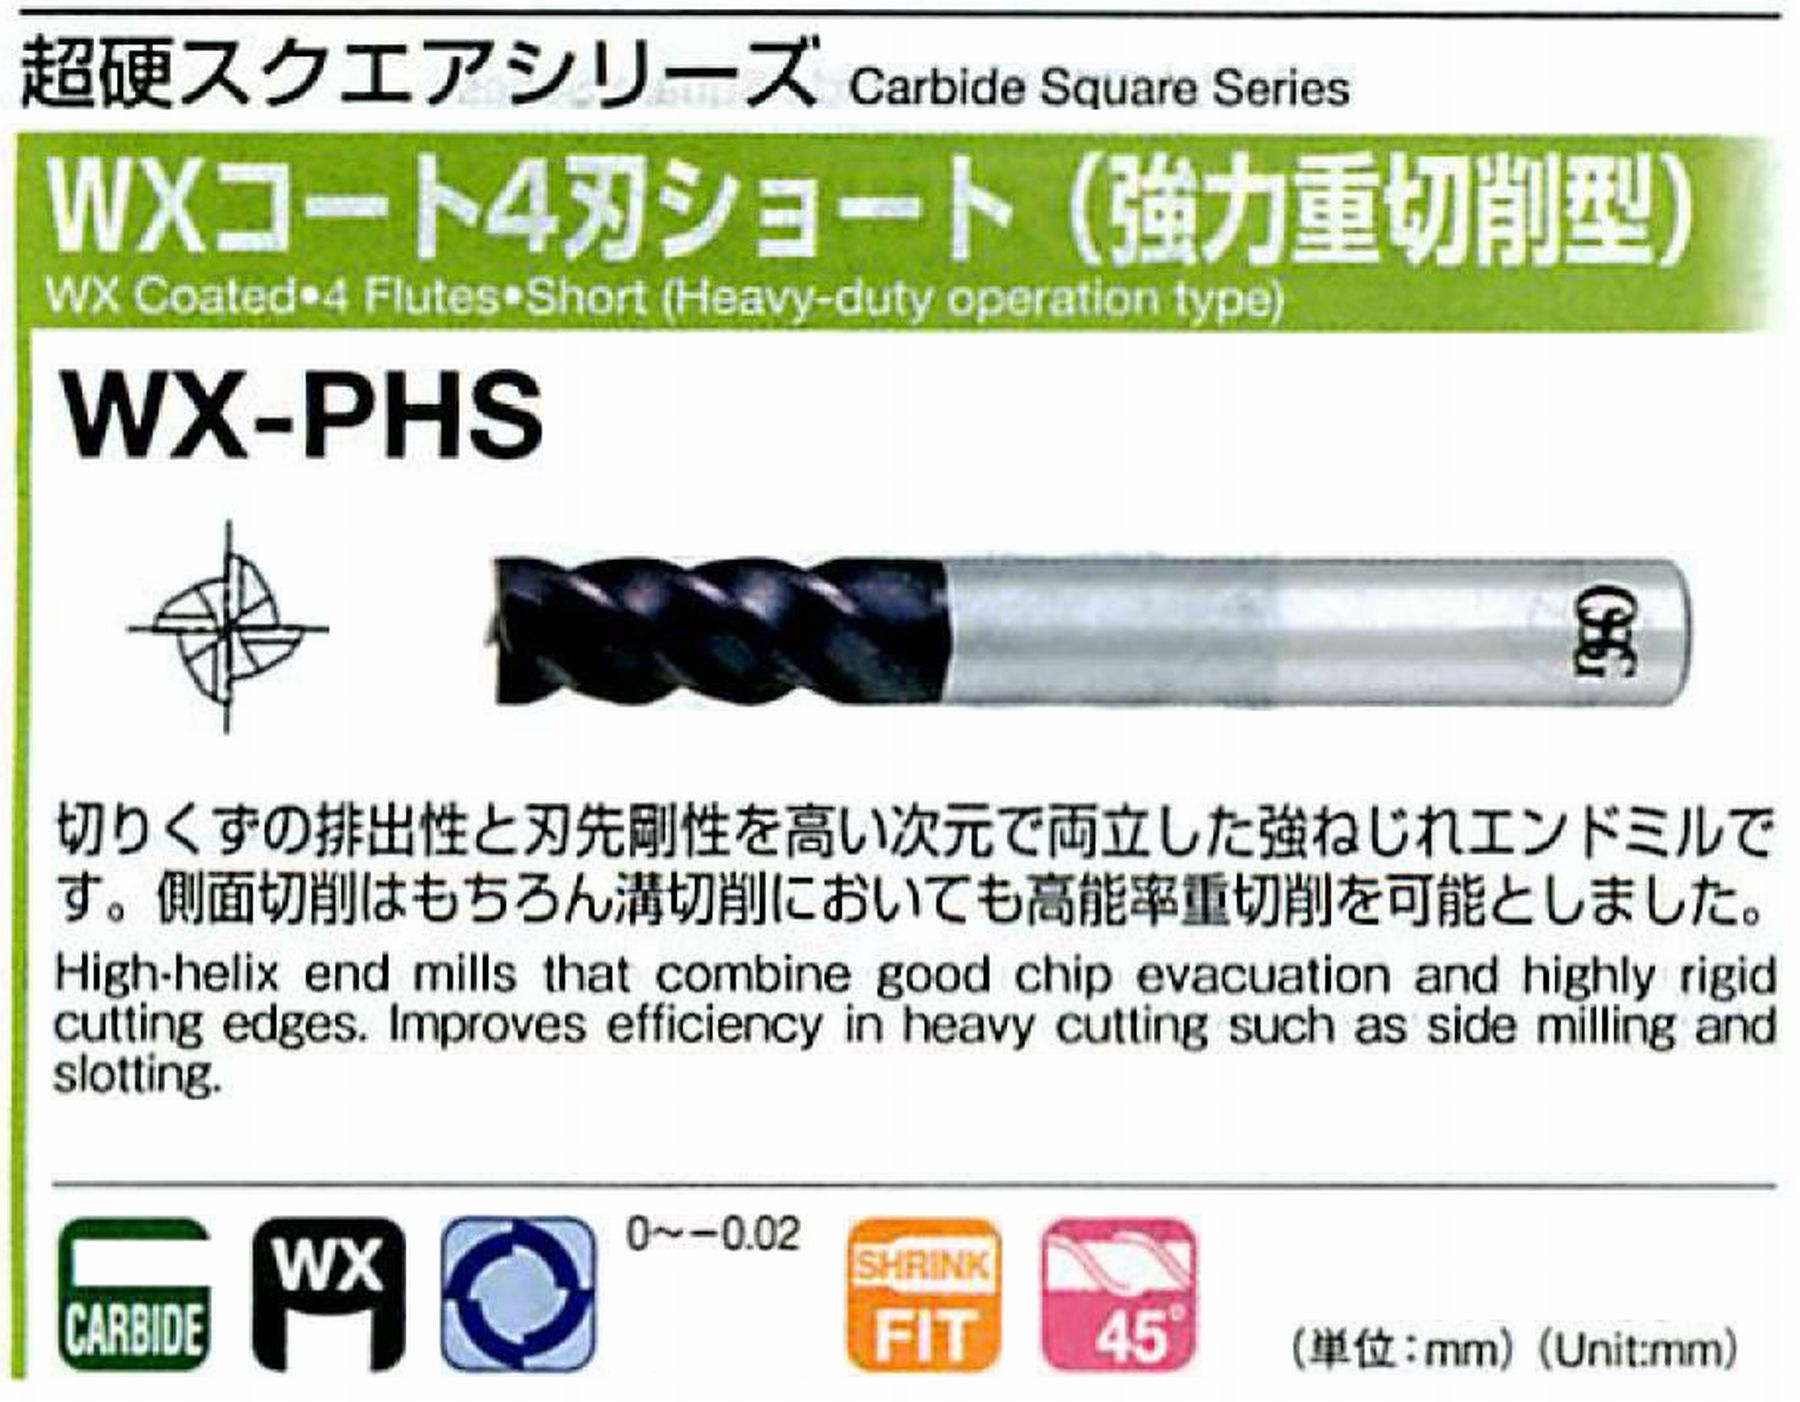 オーエスジー/OSG WXコート4刃 ショート(強力重切削型) WX-PHS 外径8 全長80 刃長19 シャンク径8mm